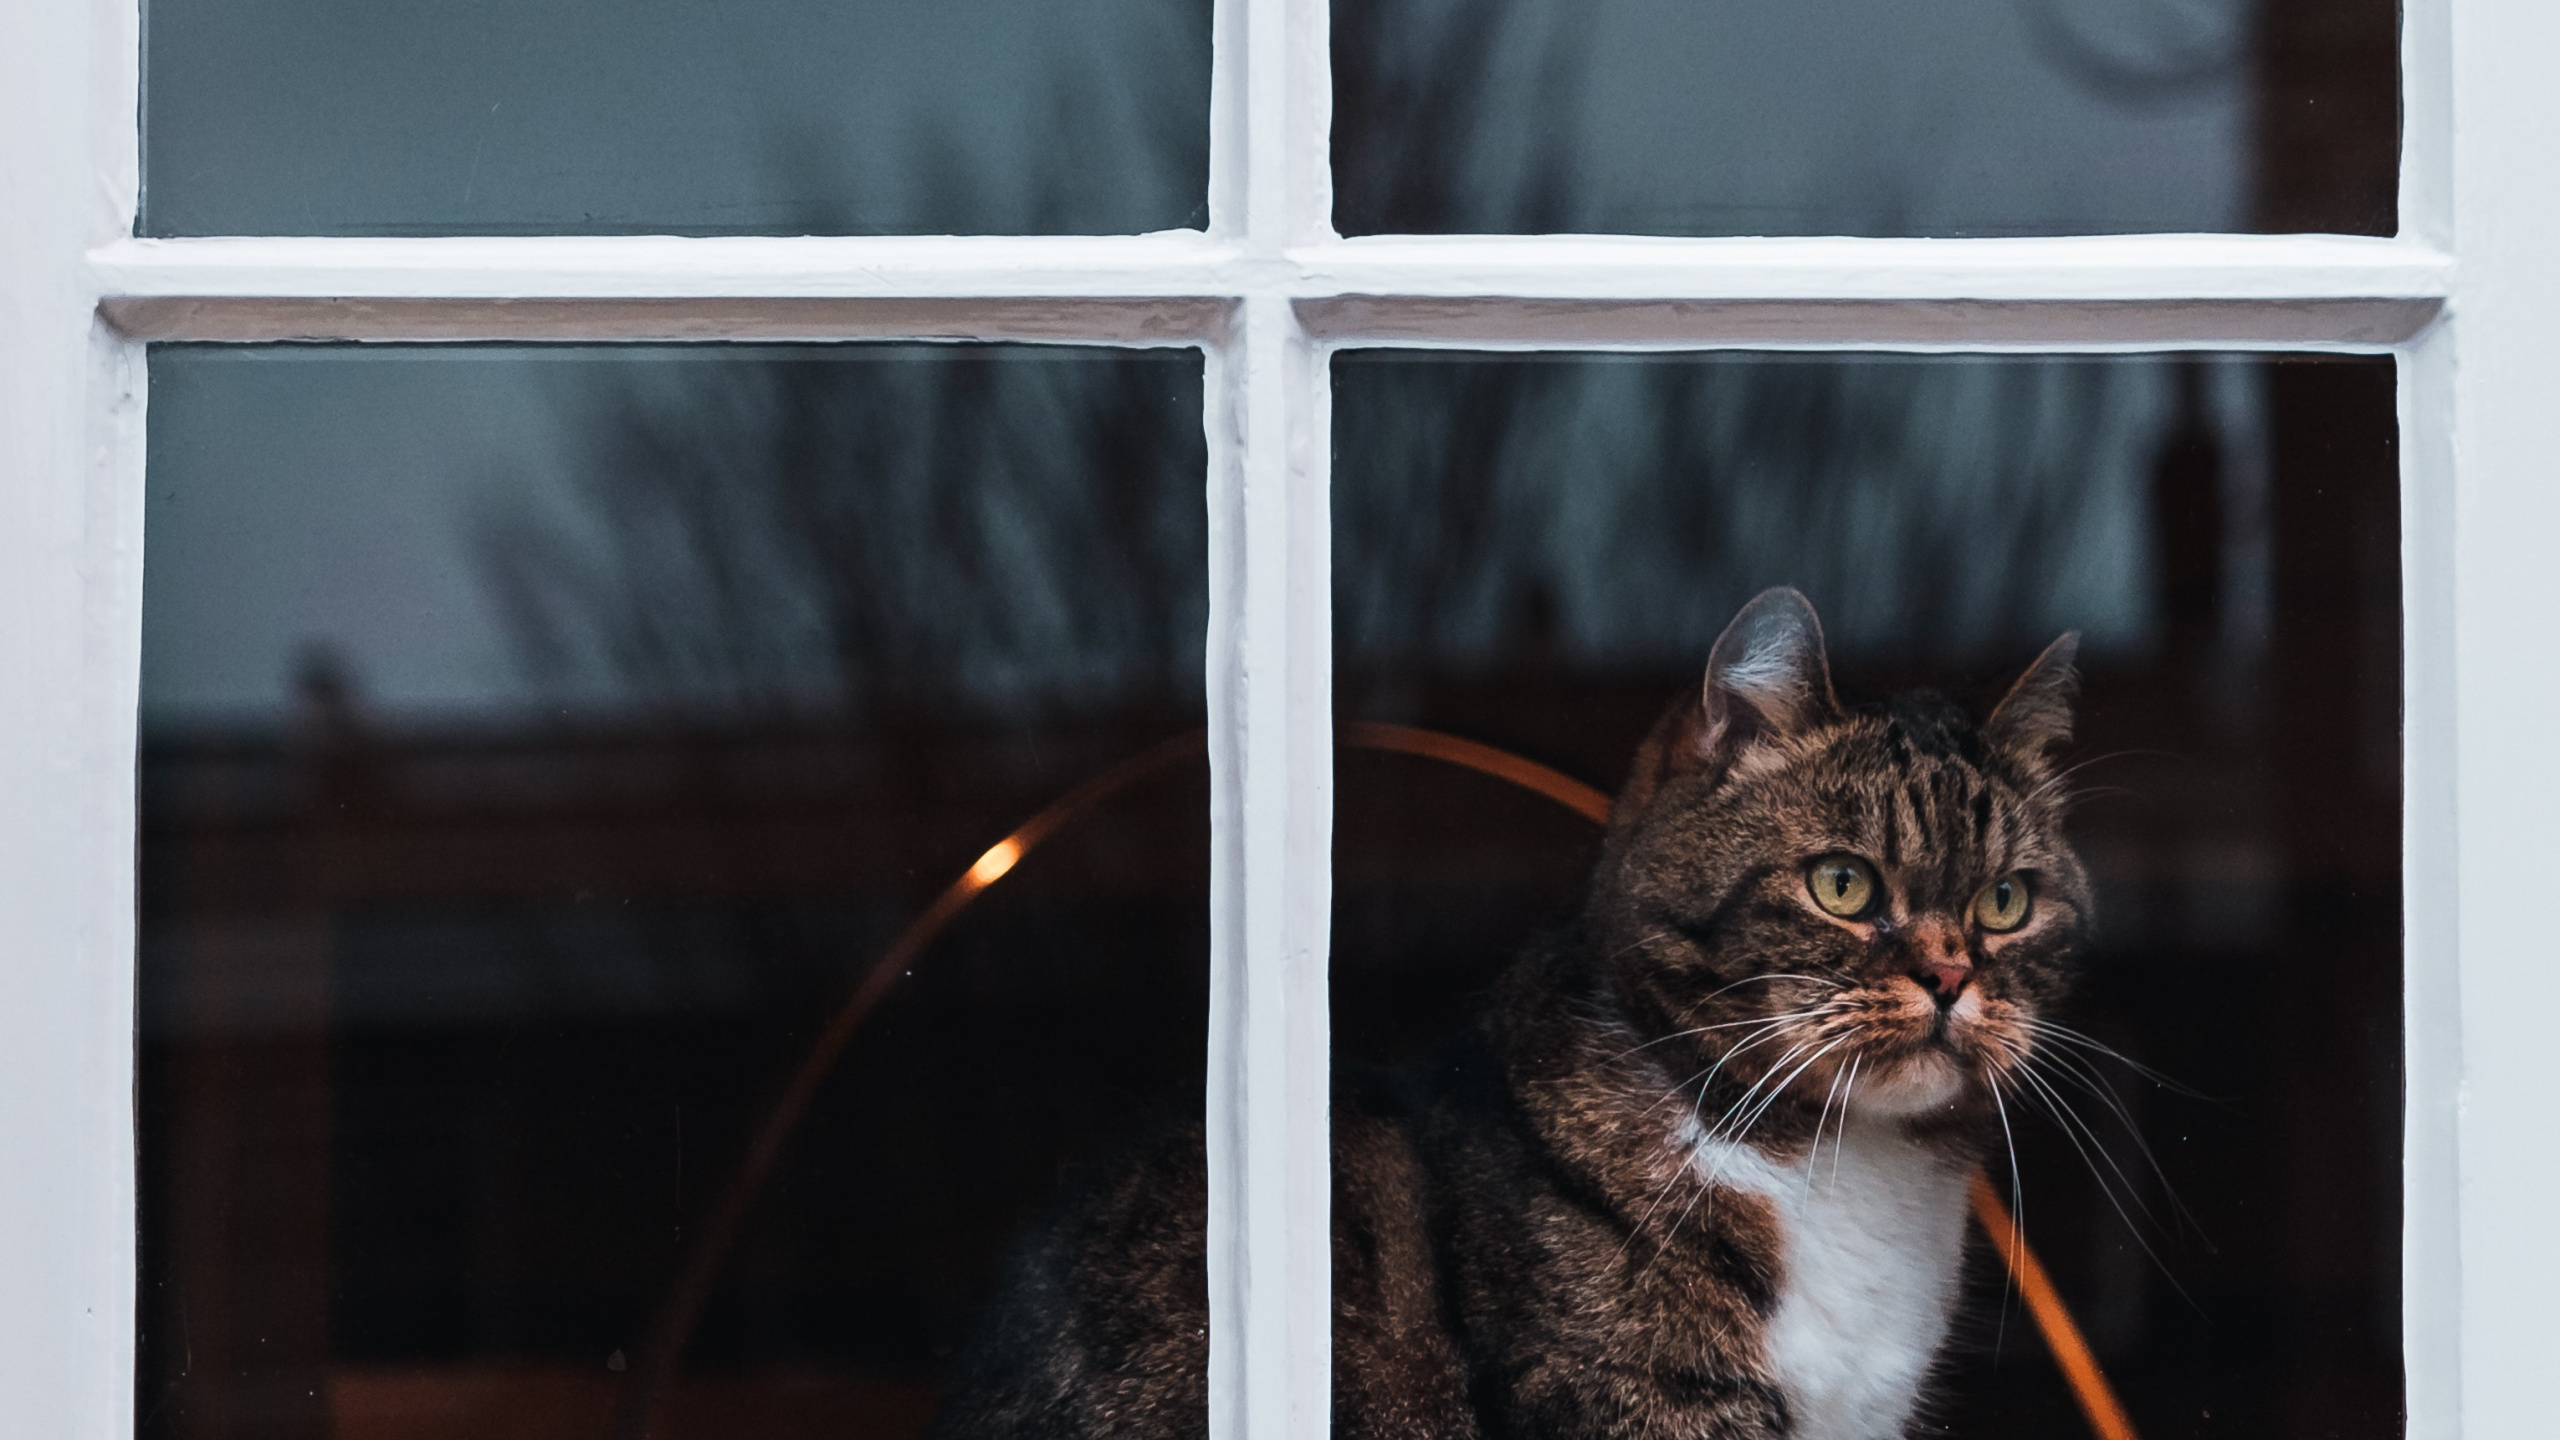 窗口, 猫科, 胡须, 小猫, 挪威森林猫 壁纸 2560x1440 允许